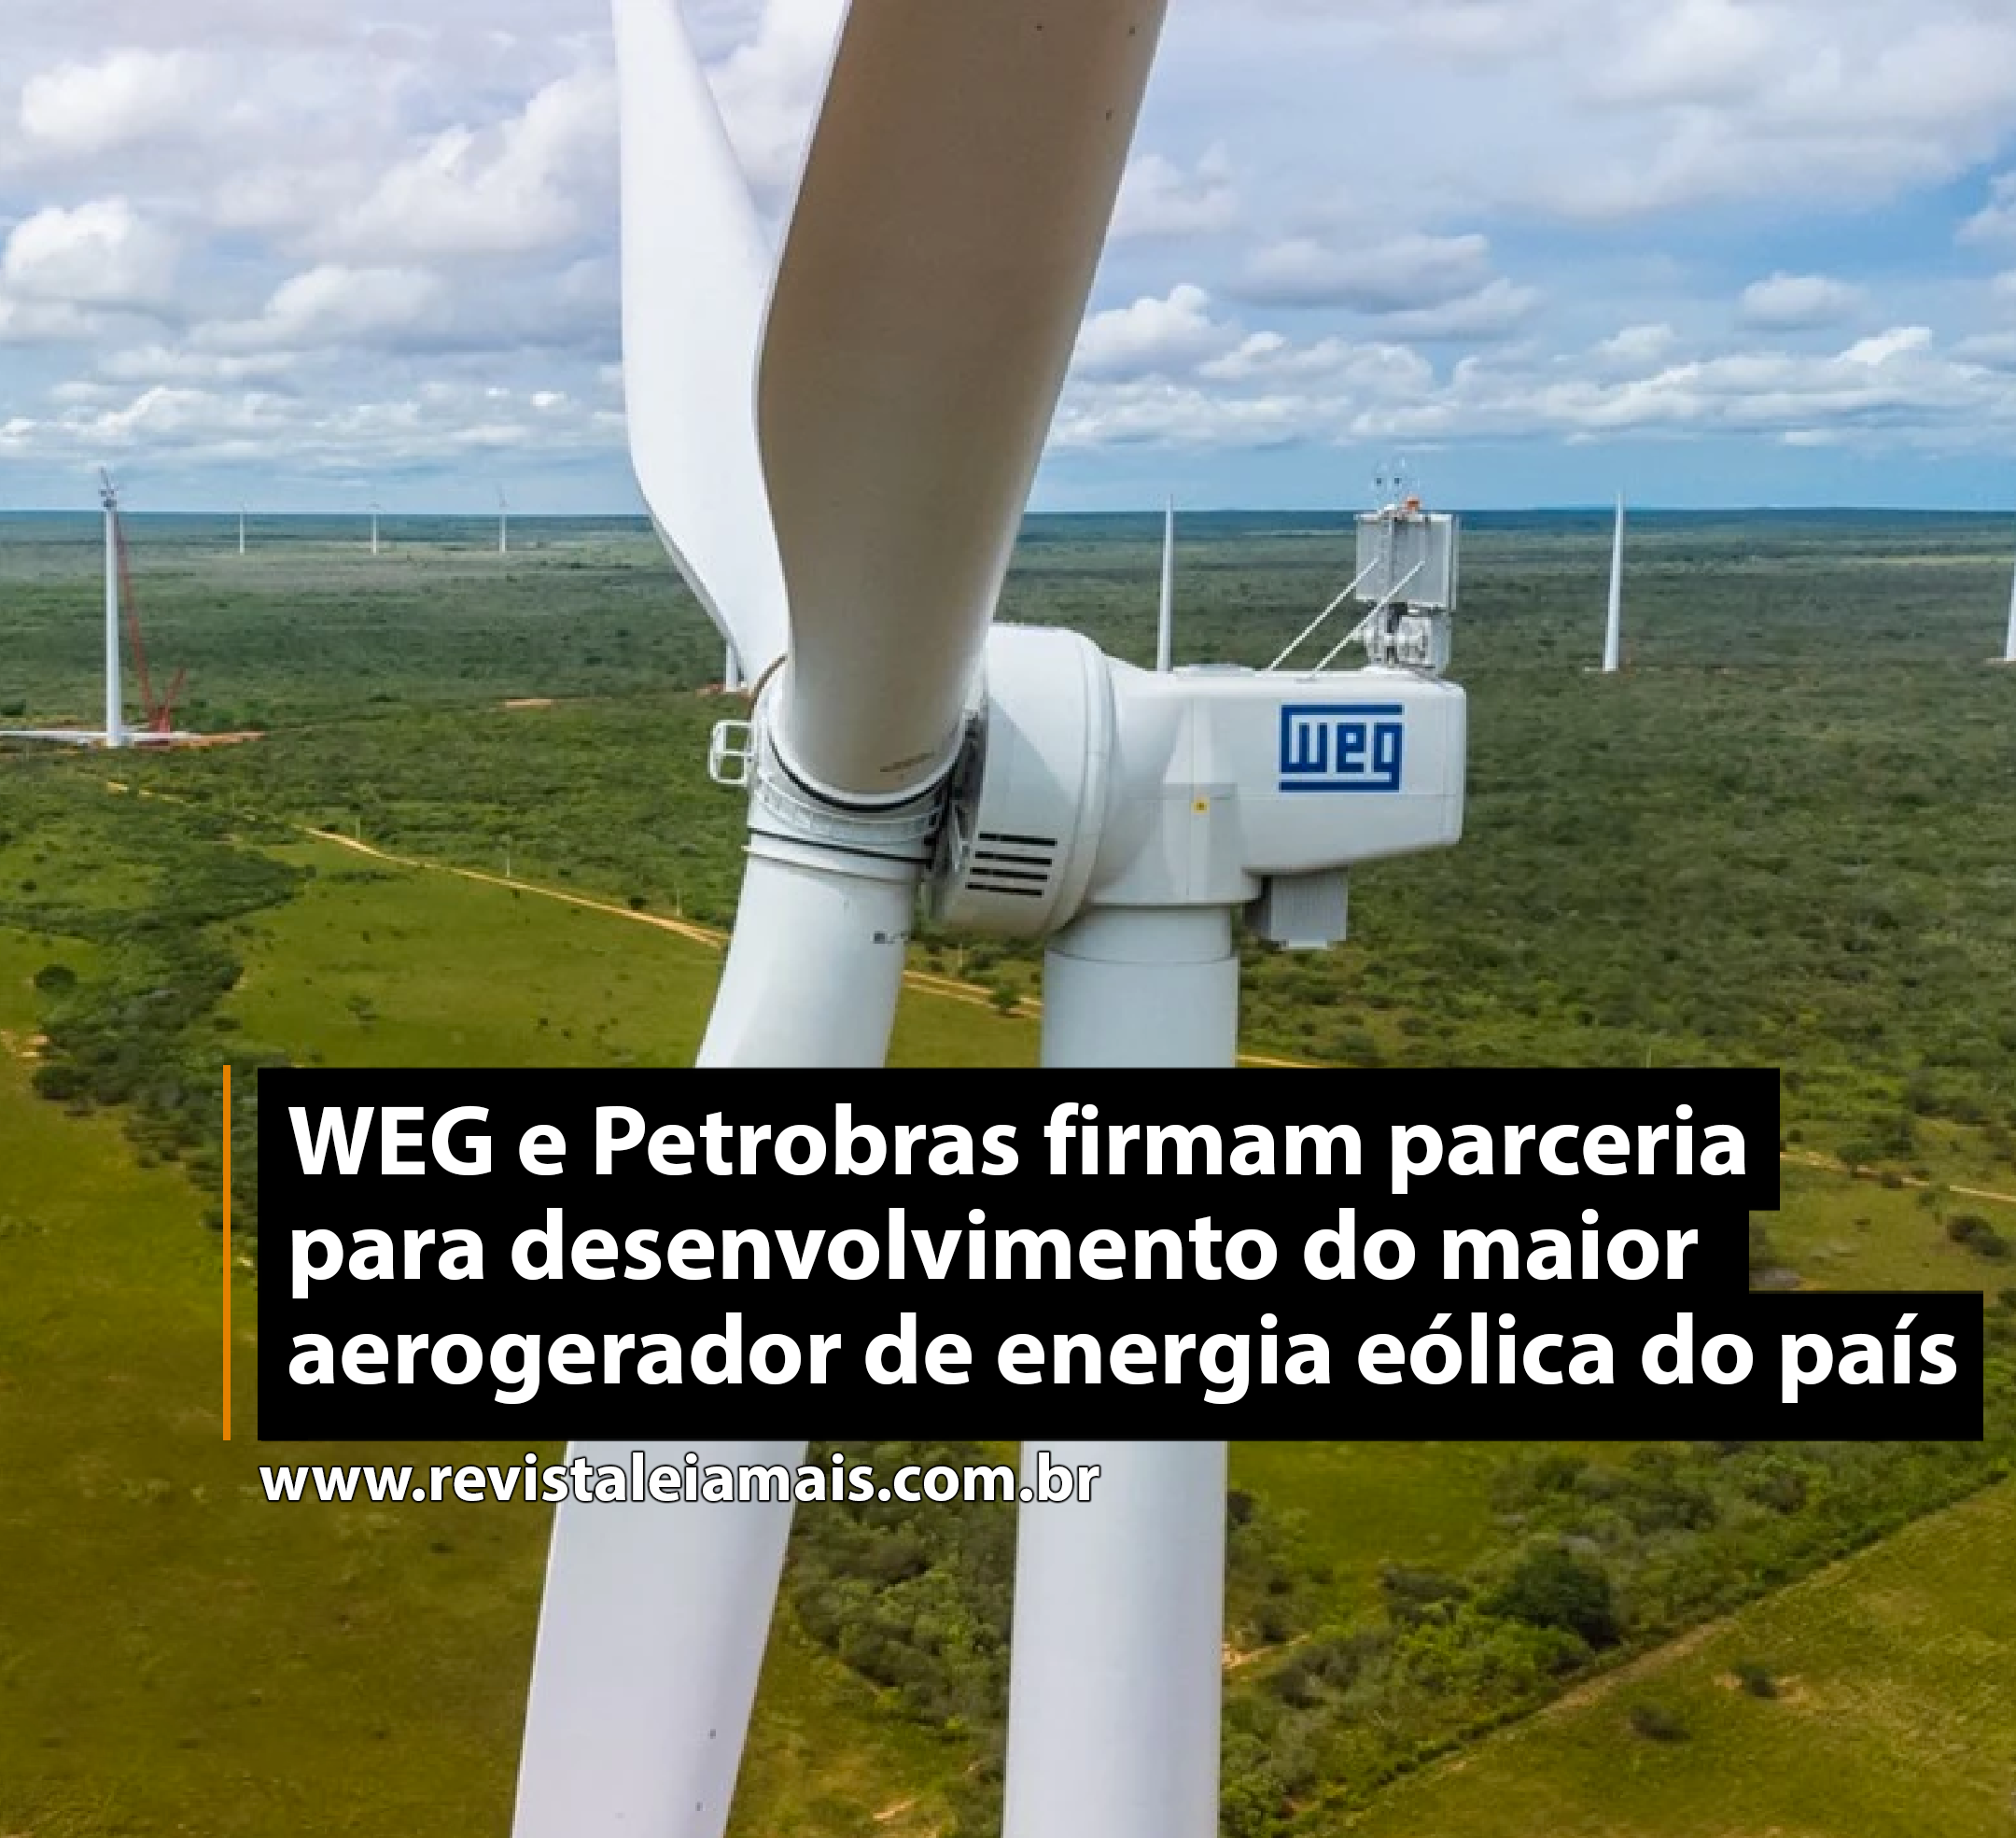 WEG e Petrobras firmam parceria para desenvolvimento do maior aerogerador de energia eólica do país